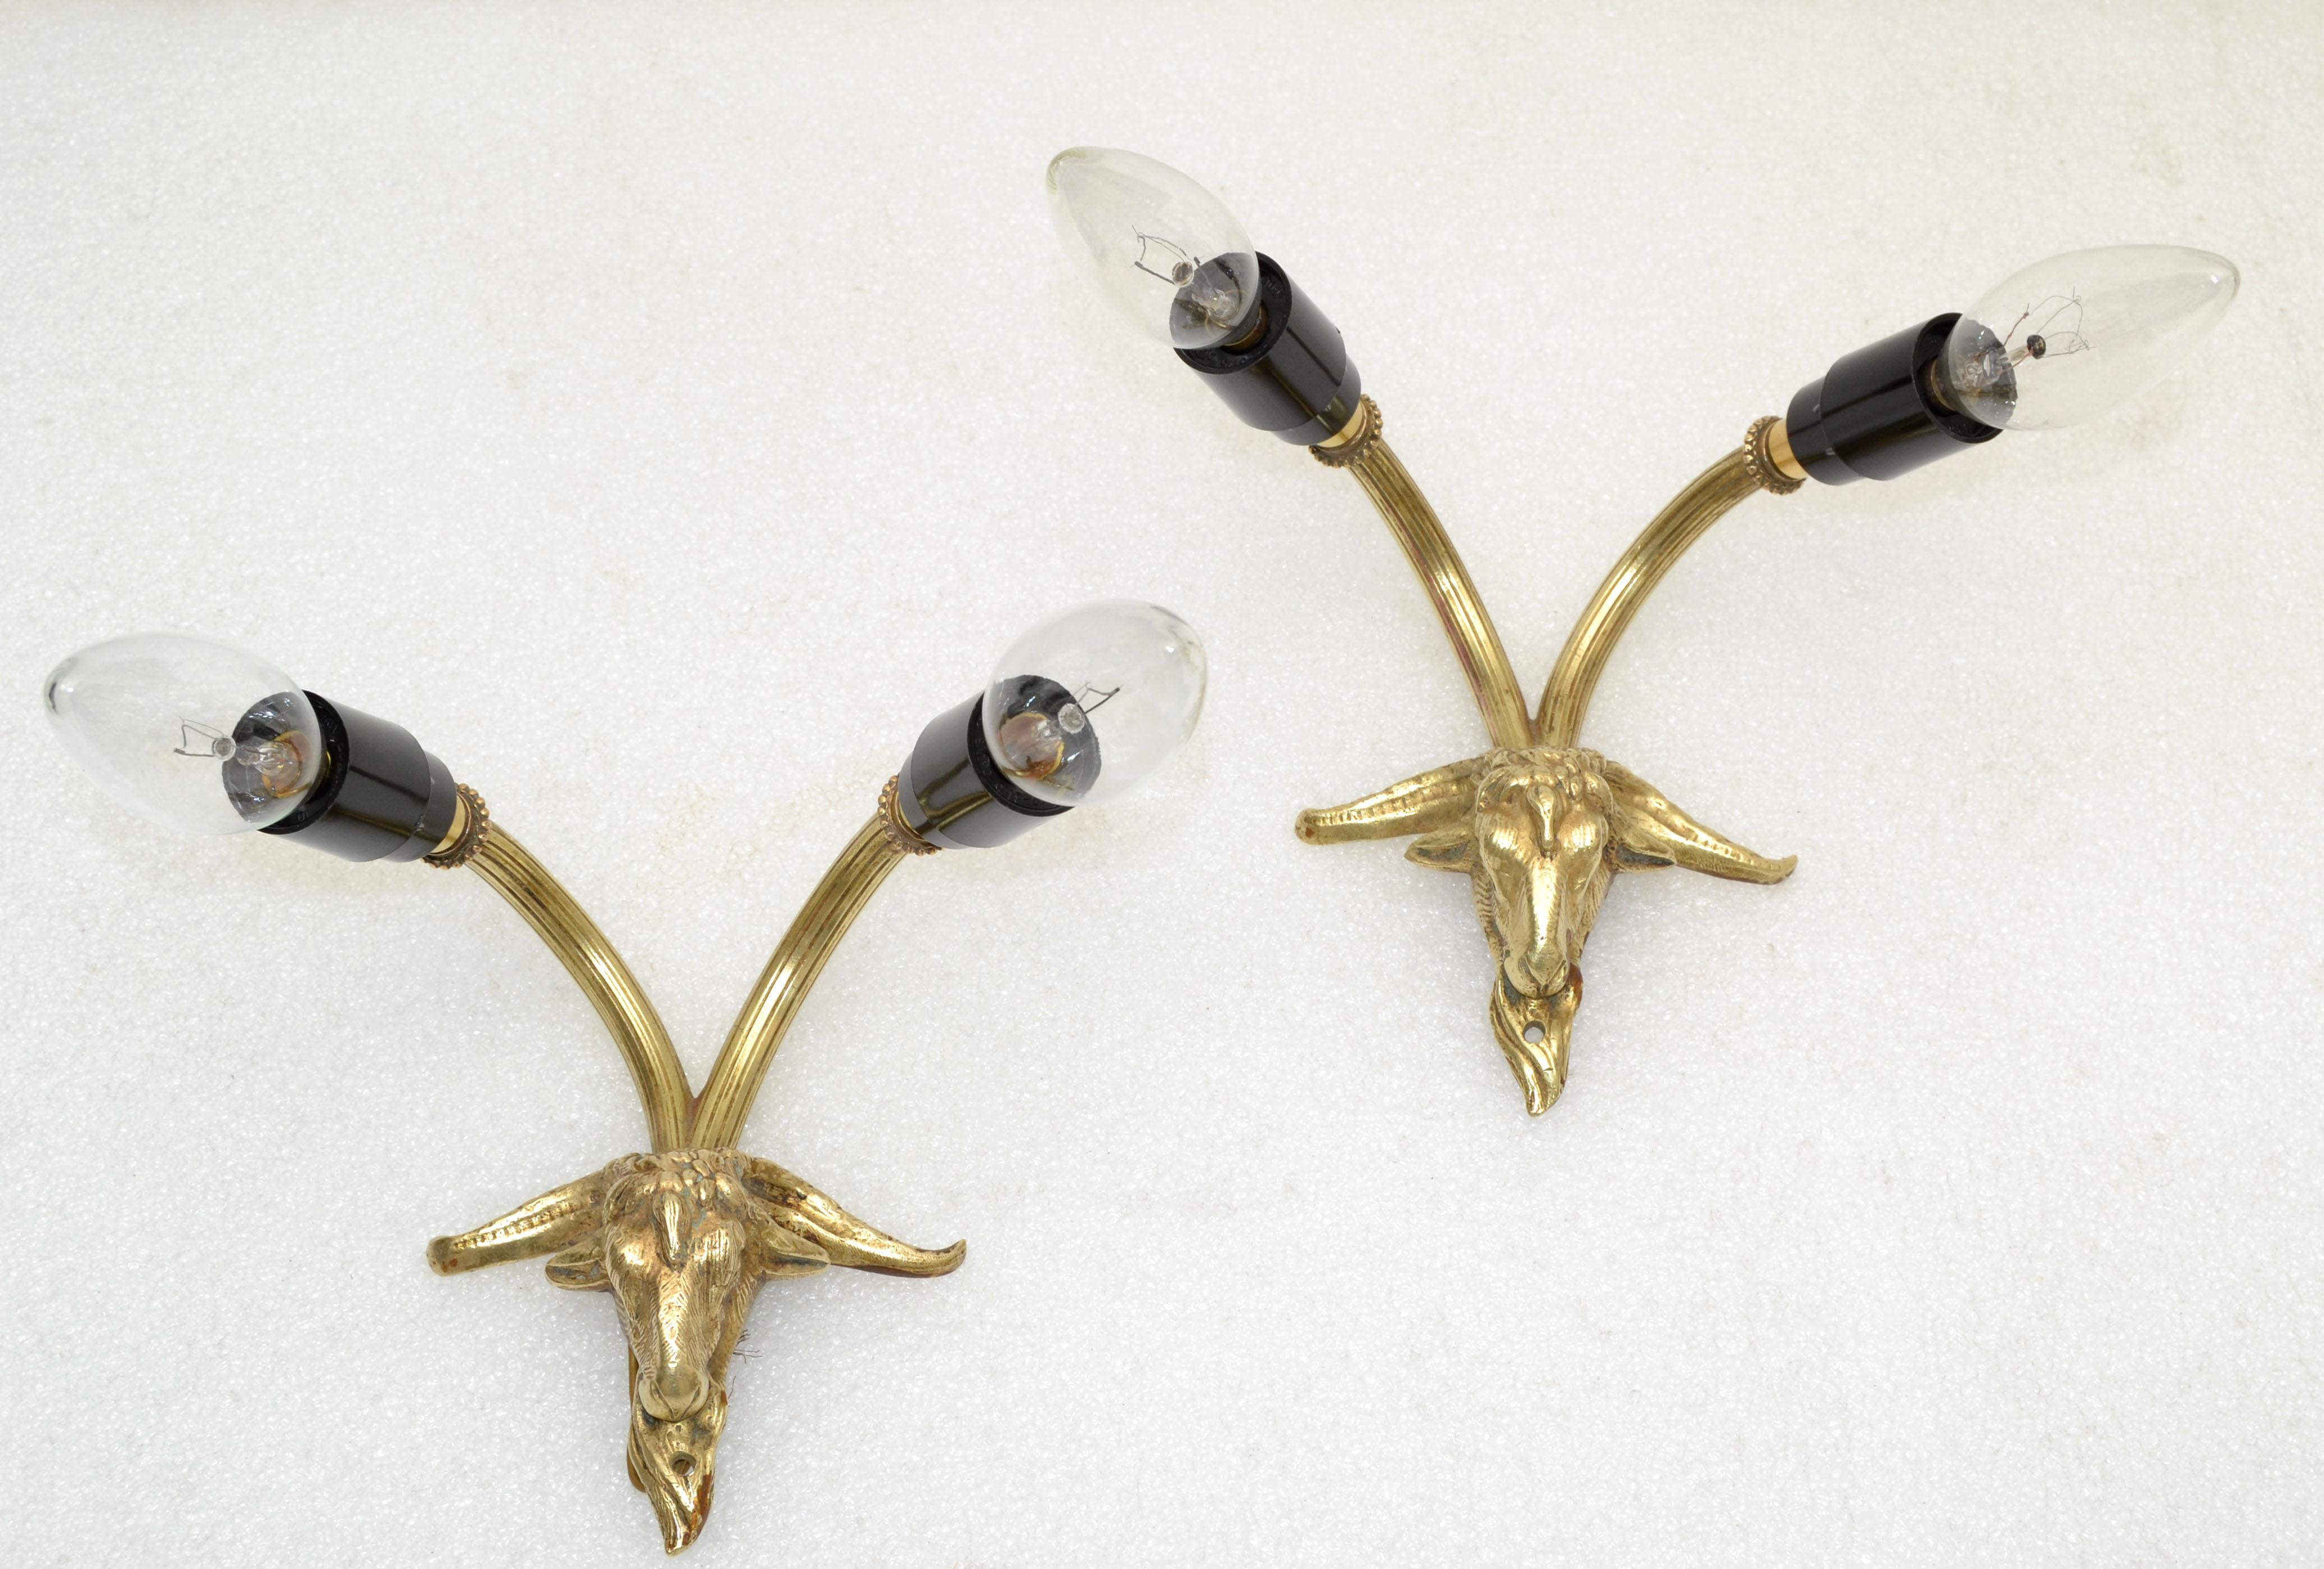 Paar französische neoklassizistische 2 Lichter Bronze Ziege Wandleuchter aus den 1960.
US Rewiring und nimmt jeweils 2 Kandelaber Glühbirne max. 40 Watt.
Rückenplatte: 1.25 x 3 Zoll. Anschlusskastendeckel in 5 Zoll Durchmesser gegen Aufpreis